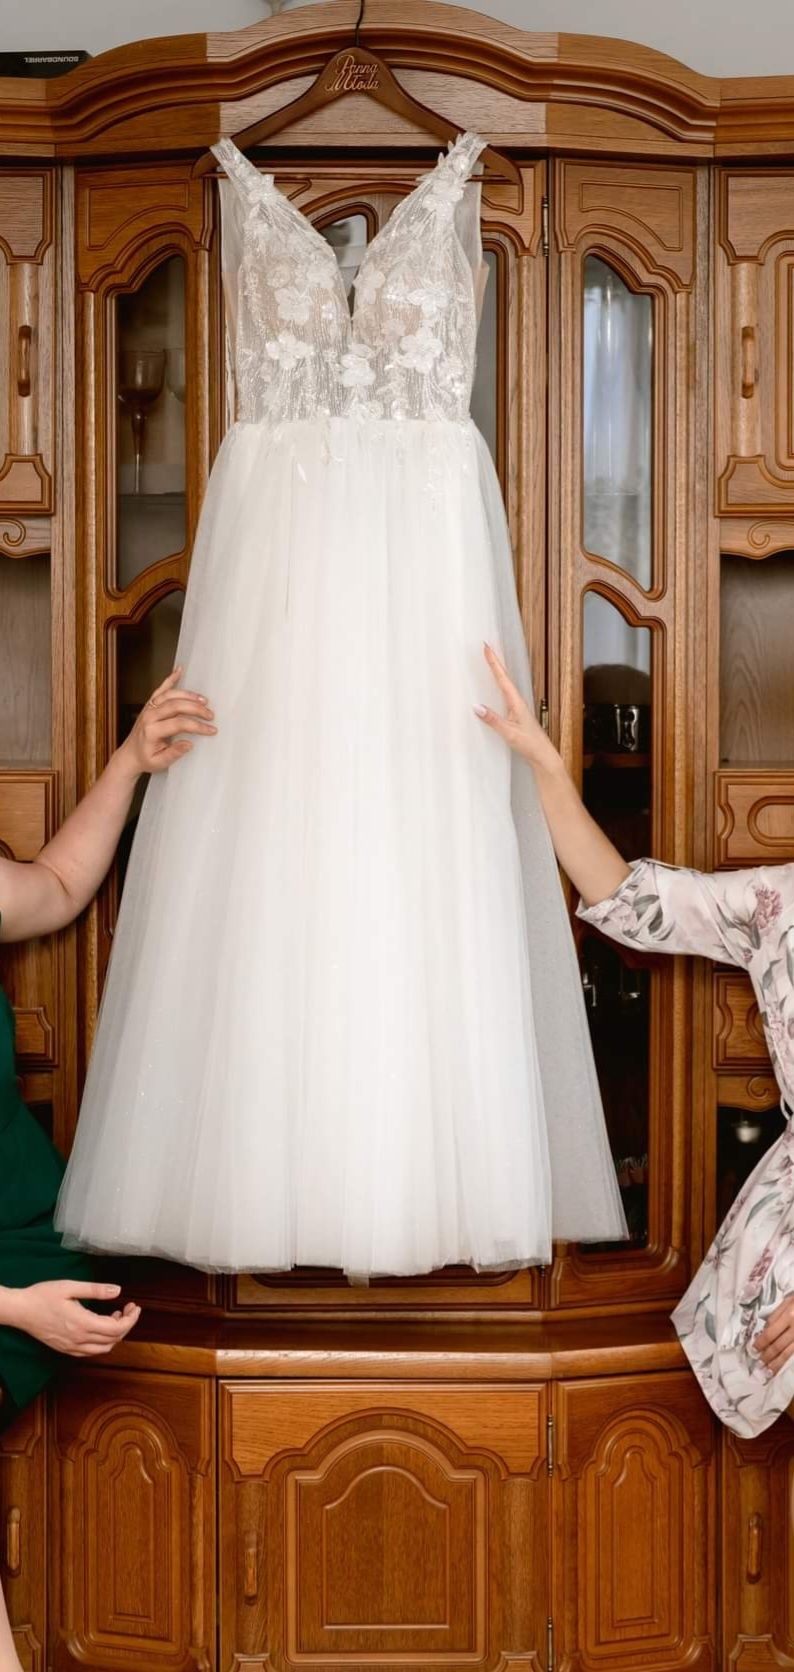 Suknia Ślubna xs 34 iterka A ecru, śmietankowa biel